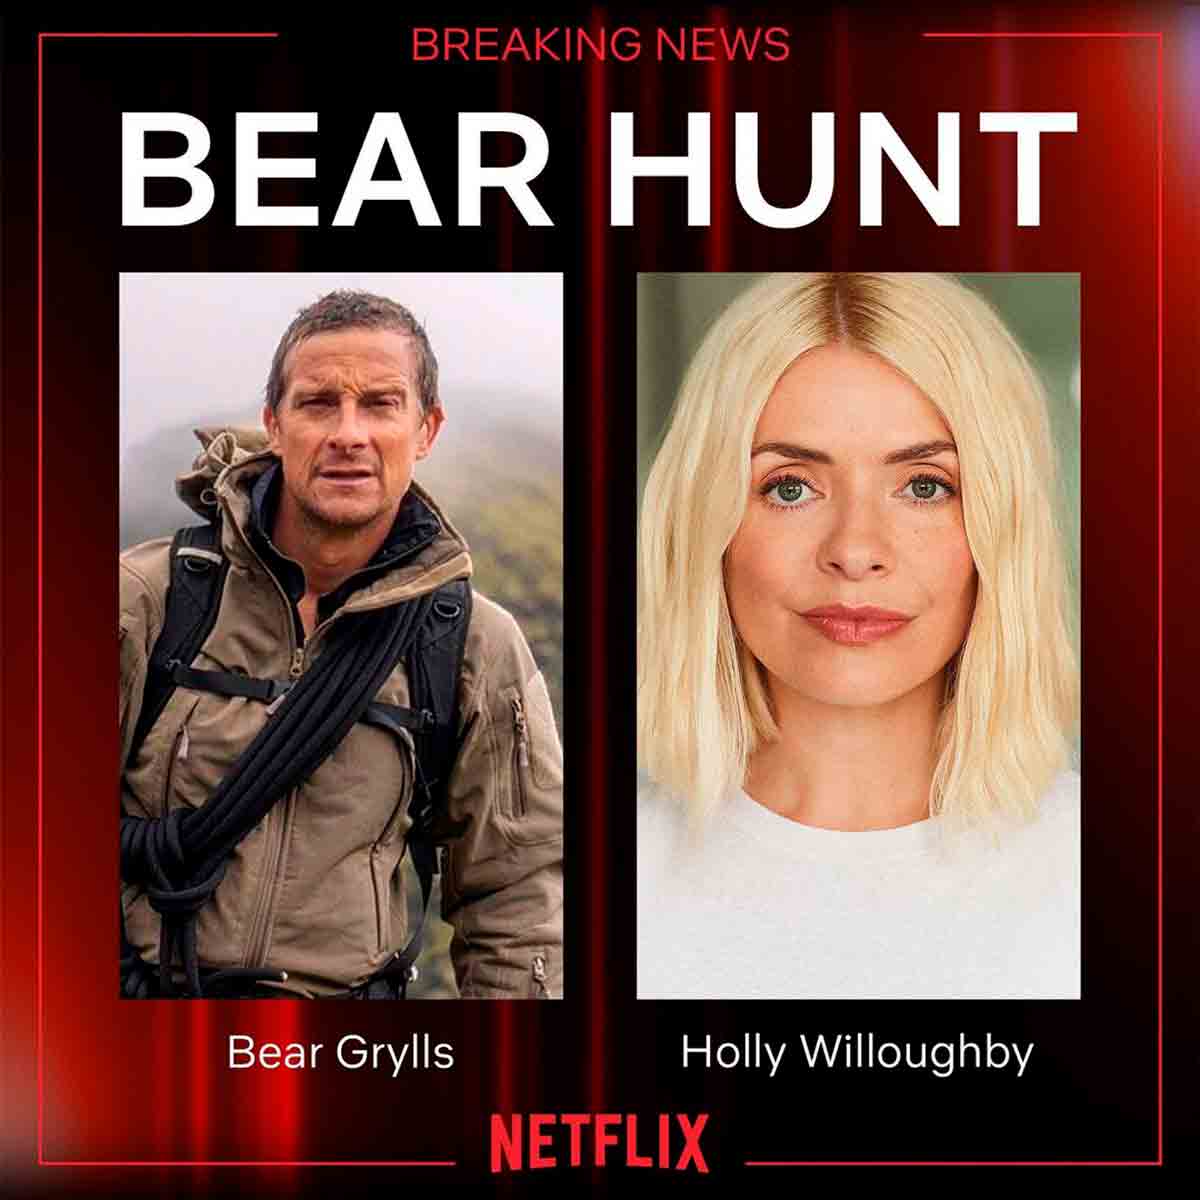 Holly Willoughby è confermata come presentatrice di un nuovo programma di sopravvivenza su Netflix (Instagram / @hollywilloughby)